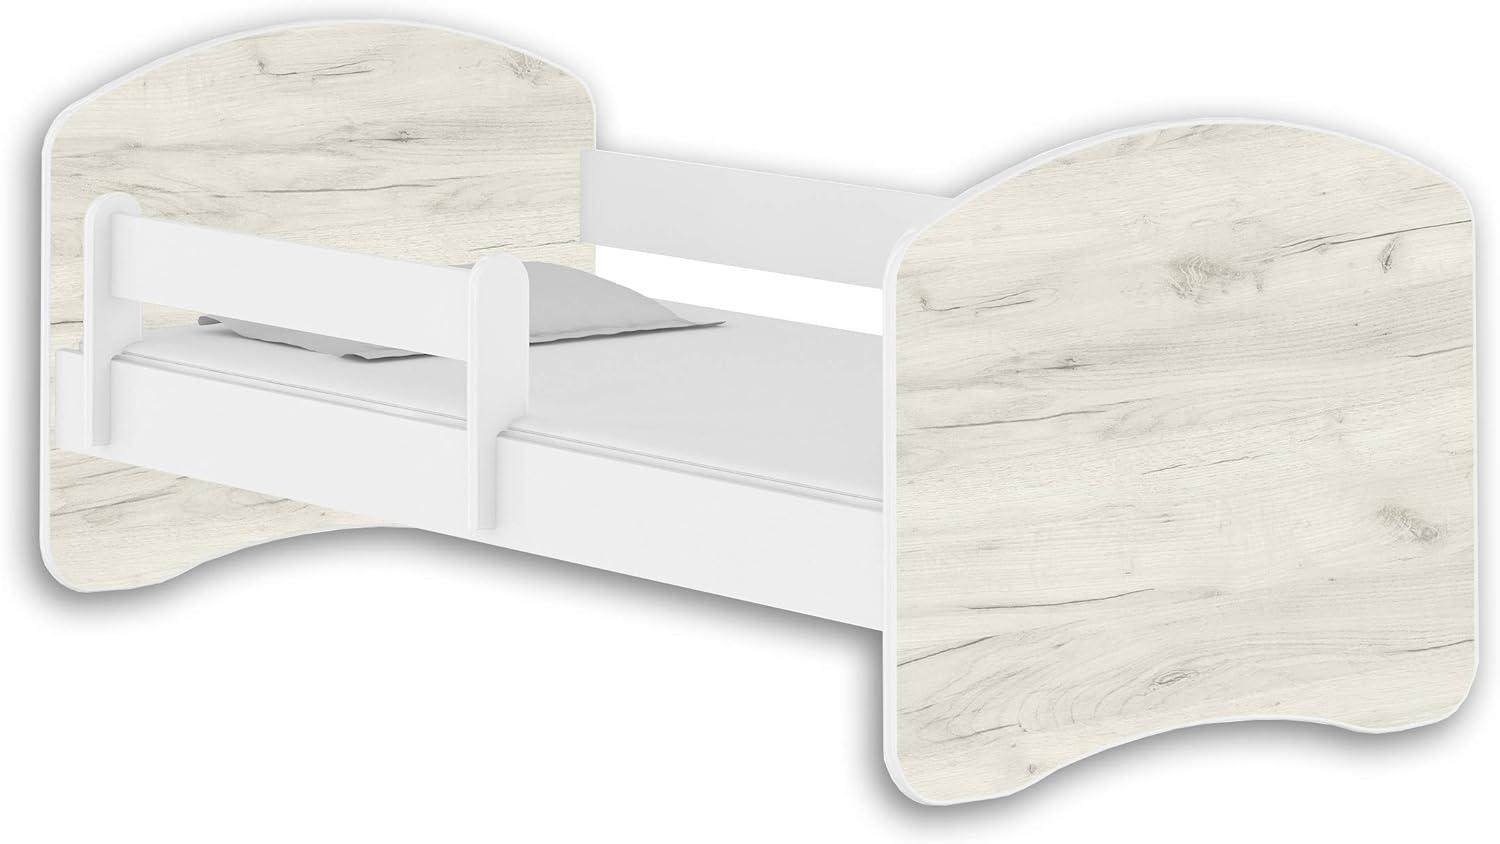 Jugendbett Kinderbett mit einer Schublade mit Rausfallschutz und Matratze Weiß ACMA II 140 160 180 (180x80 cm, Weiß - Eiche Weiß) Bild 1